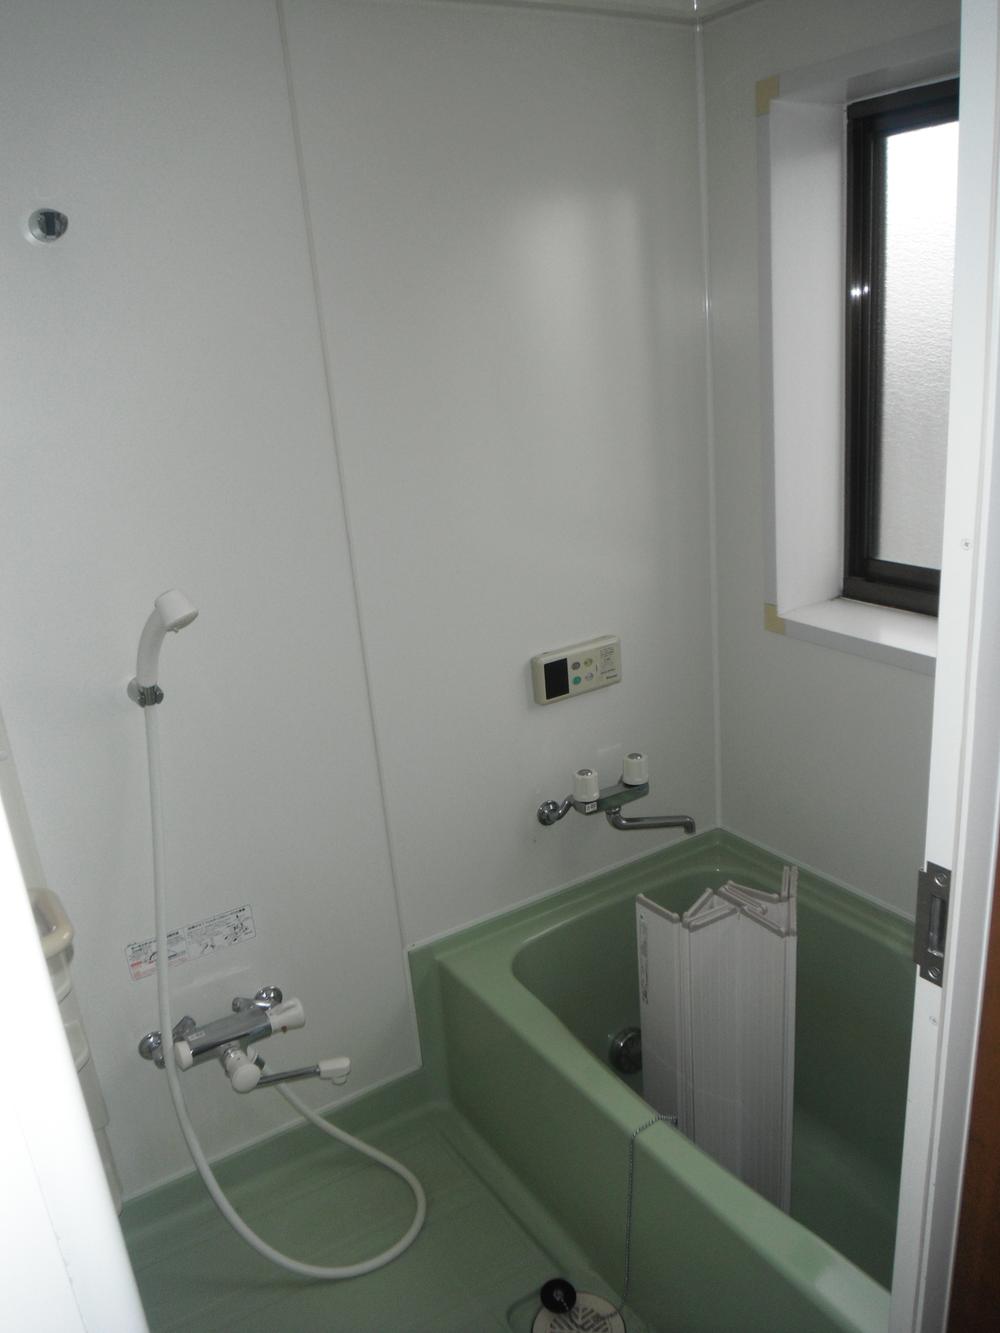 Bathroom. Indoor (12 May 2012) shooting